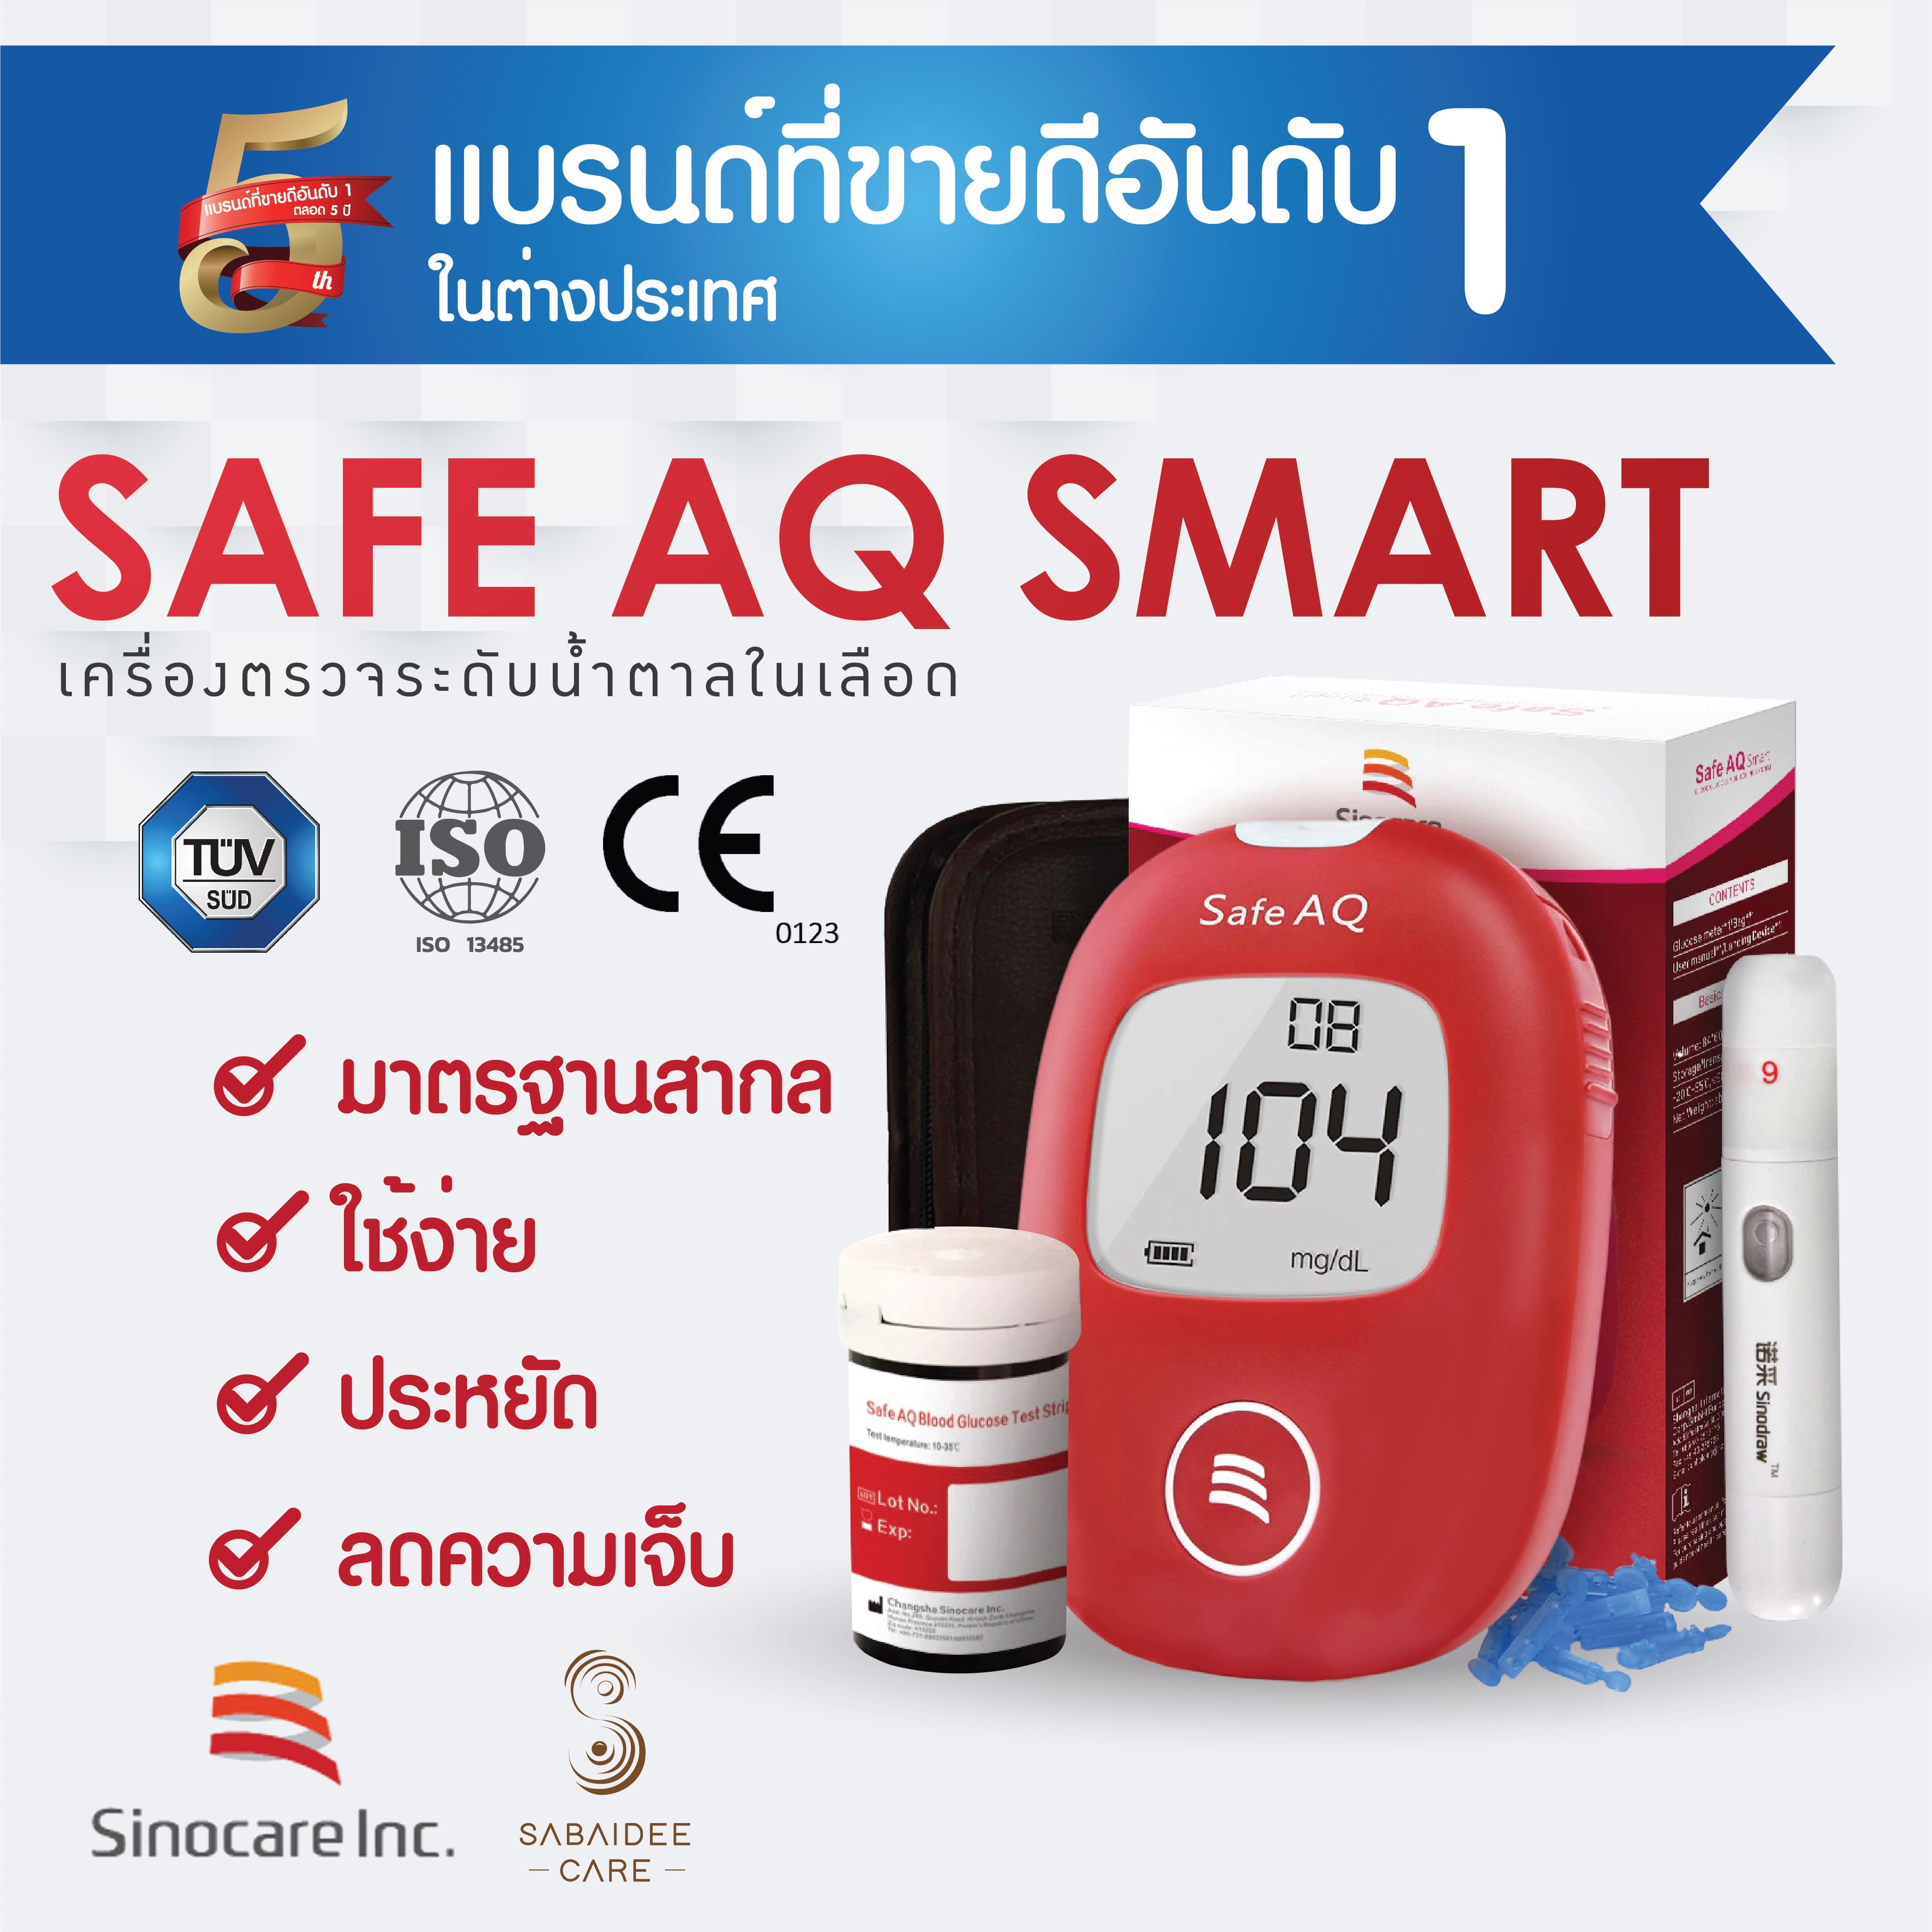 Safe AQ Smart ชุดเครื่องตรวจวัดน้ำตาล แผ่นตรวจ 25 ชิ้นและอุปกรณ์สำหรับเจาะนิ้ว 50 ชิ้น